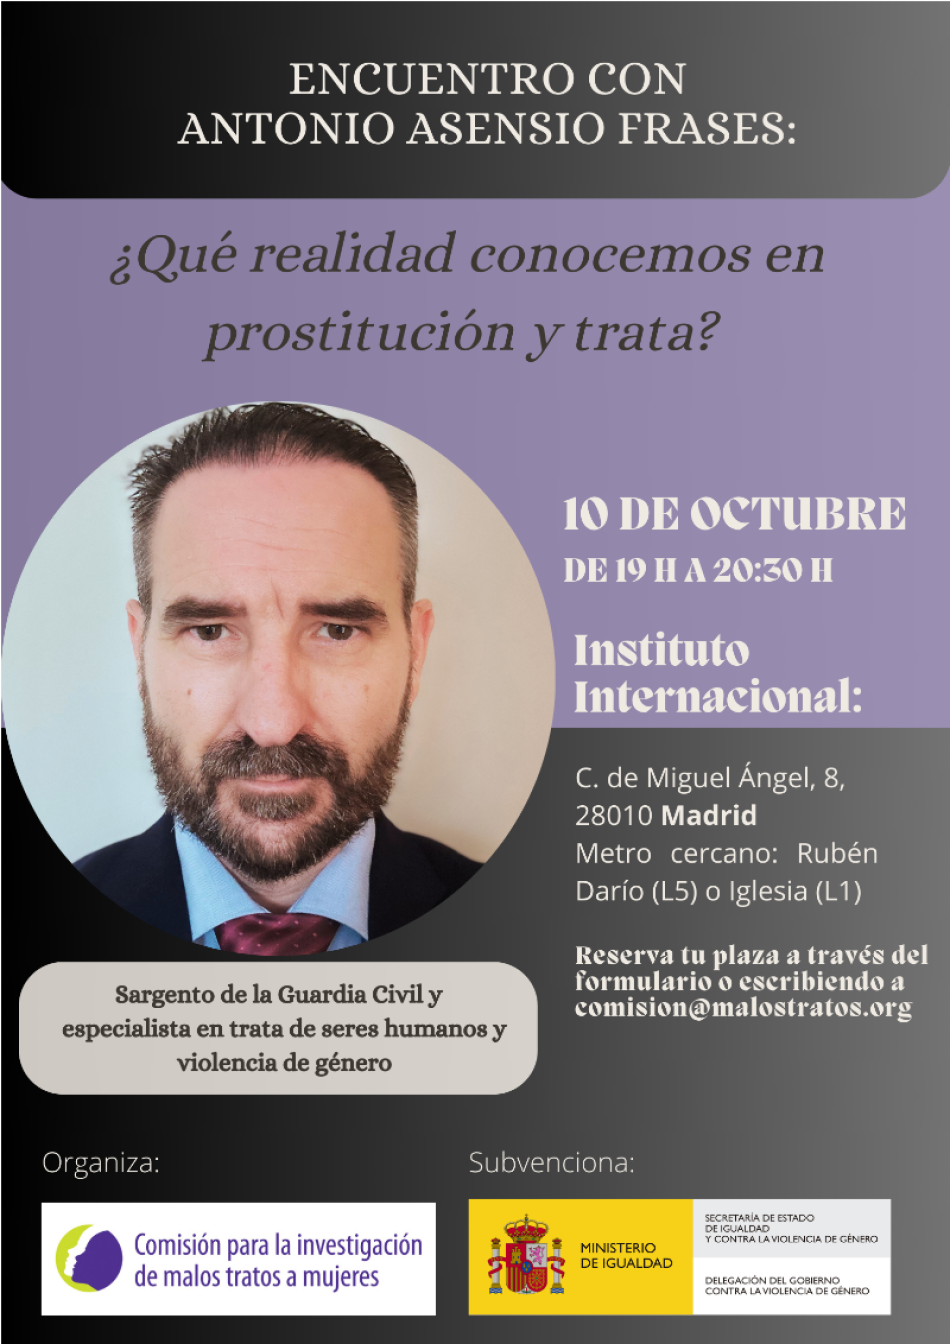 La CIMTM organiza en Madrid el encuentro «¿Qué realidad conocemos en prostitución y trata?» con el Sargento de la Guardia Civil, Antonio Asensio Frases